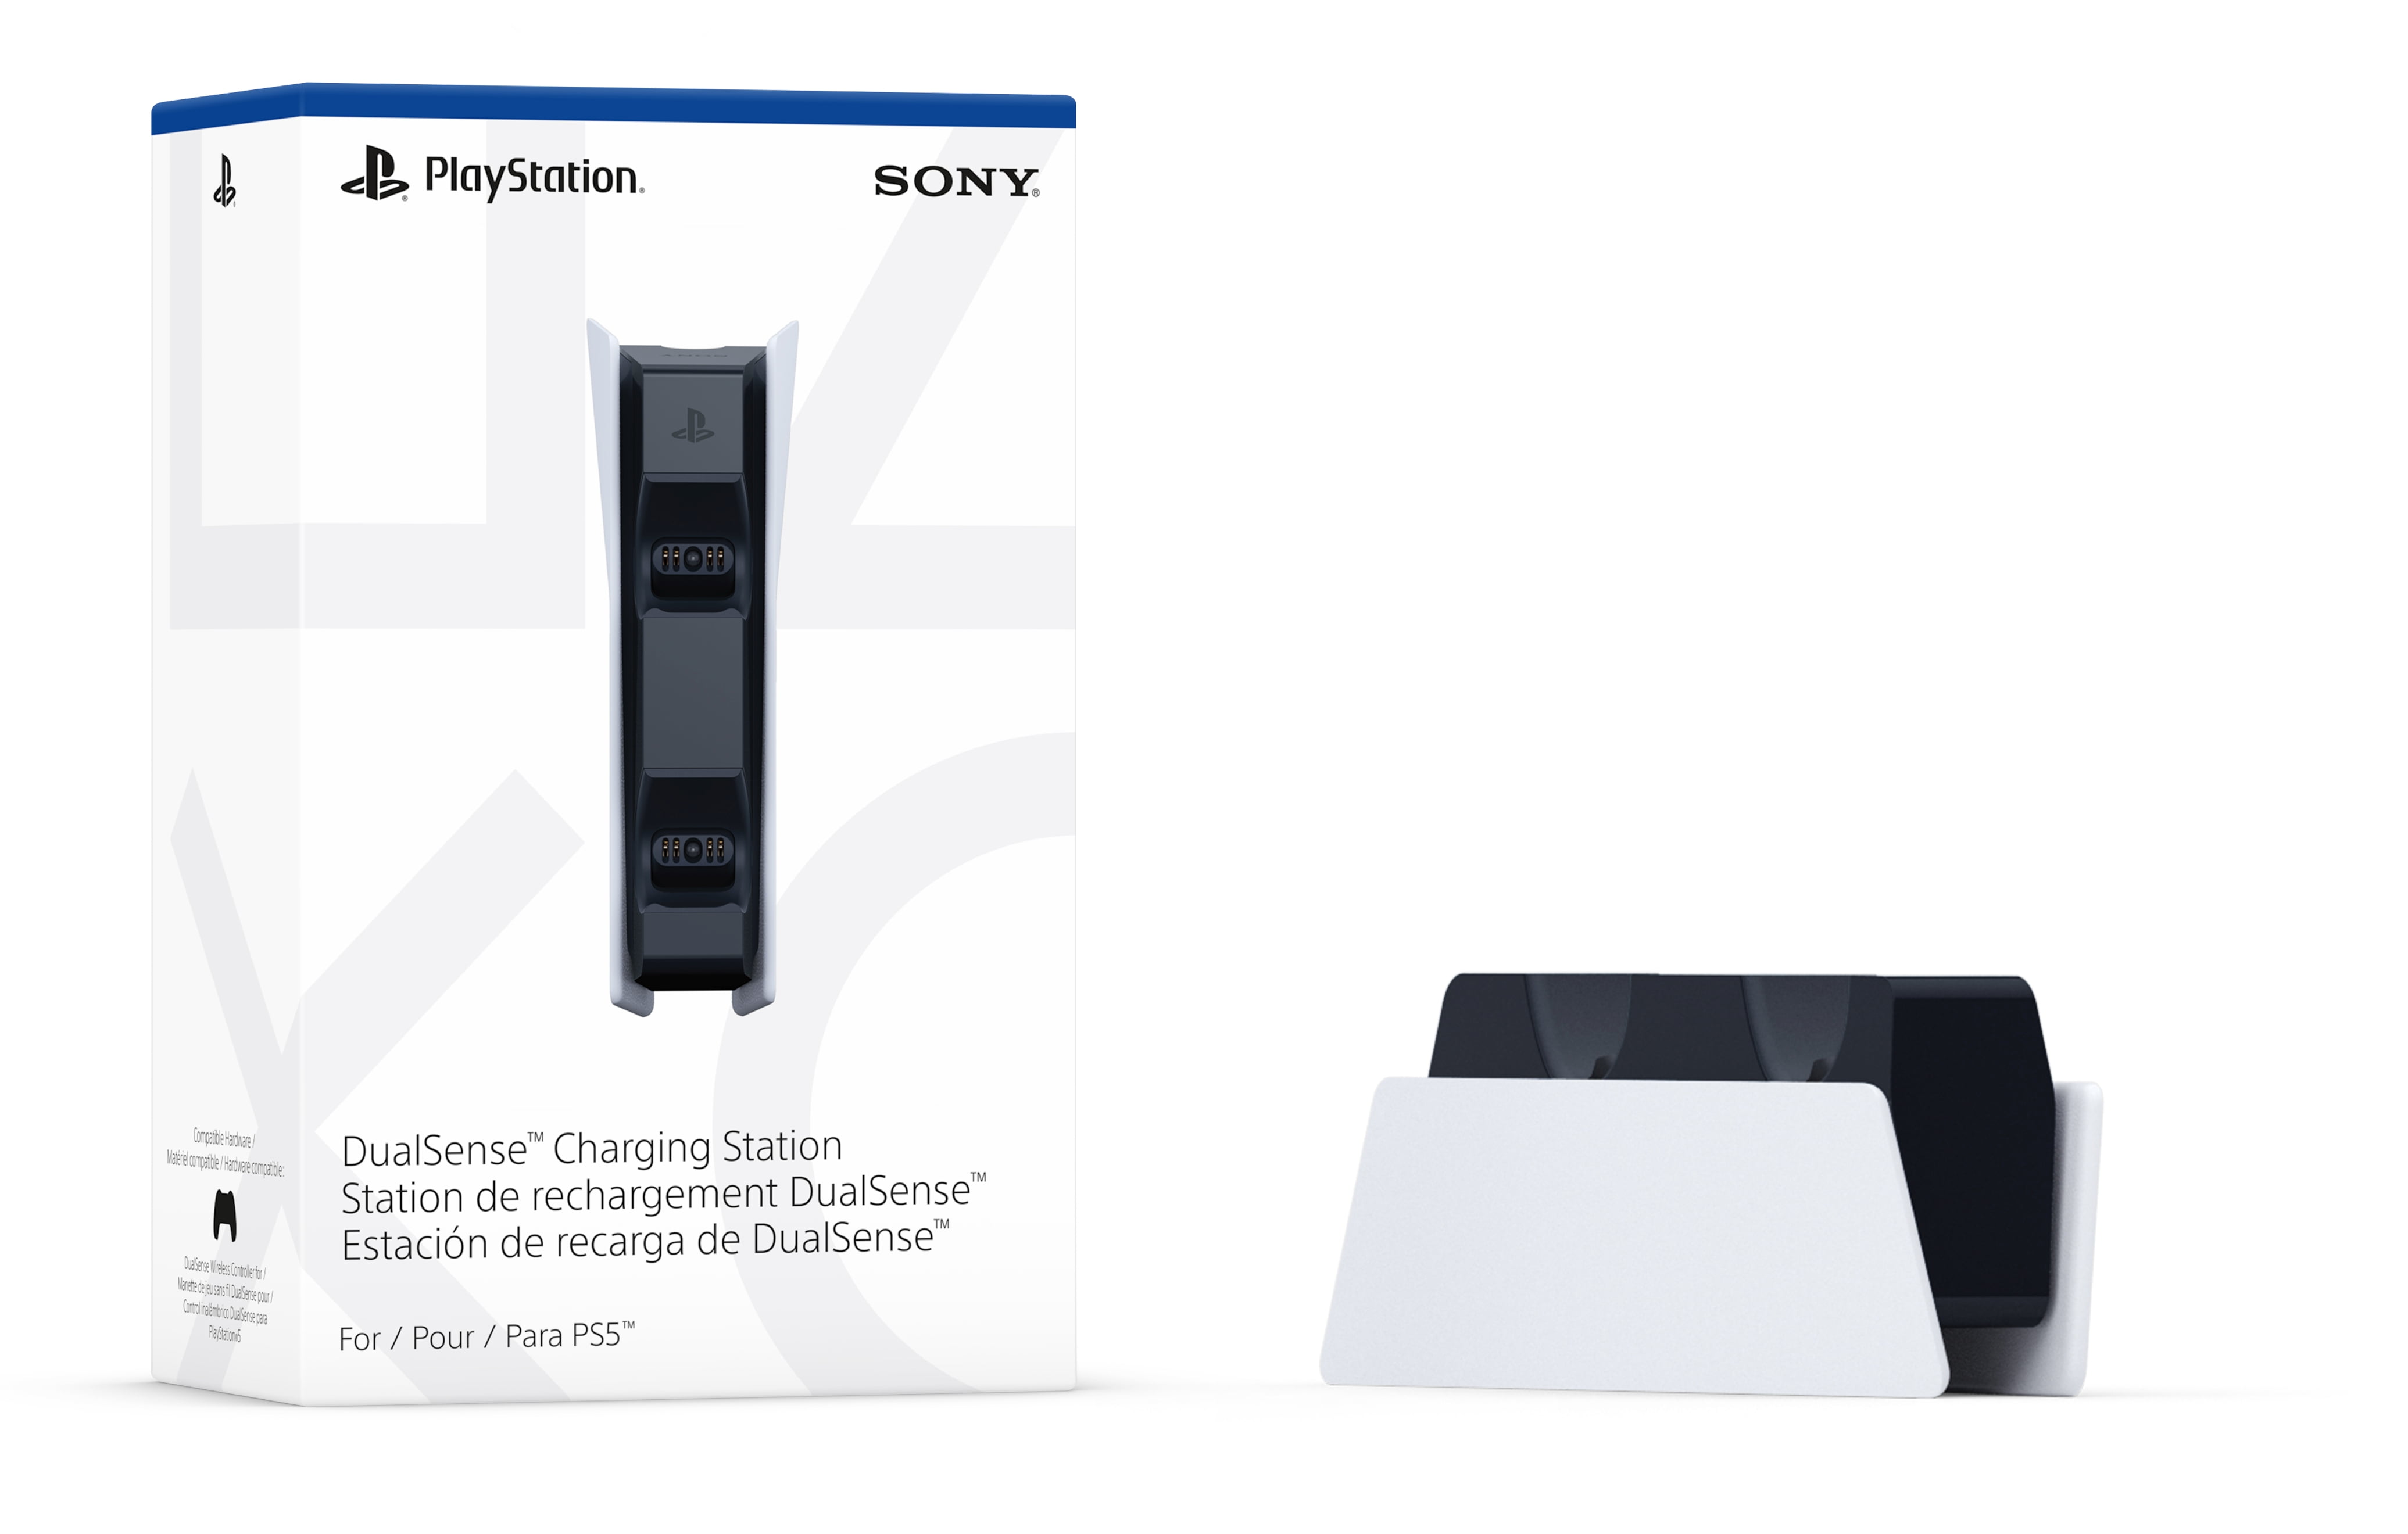 Câble de charge Playstation 5 Type C pour manette Sony PS5